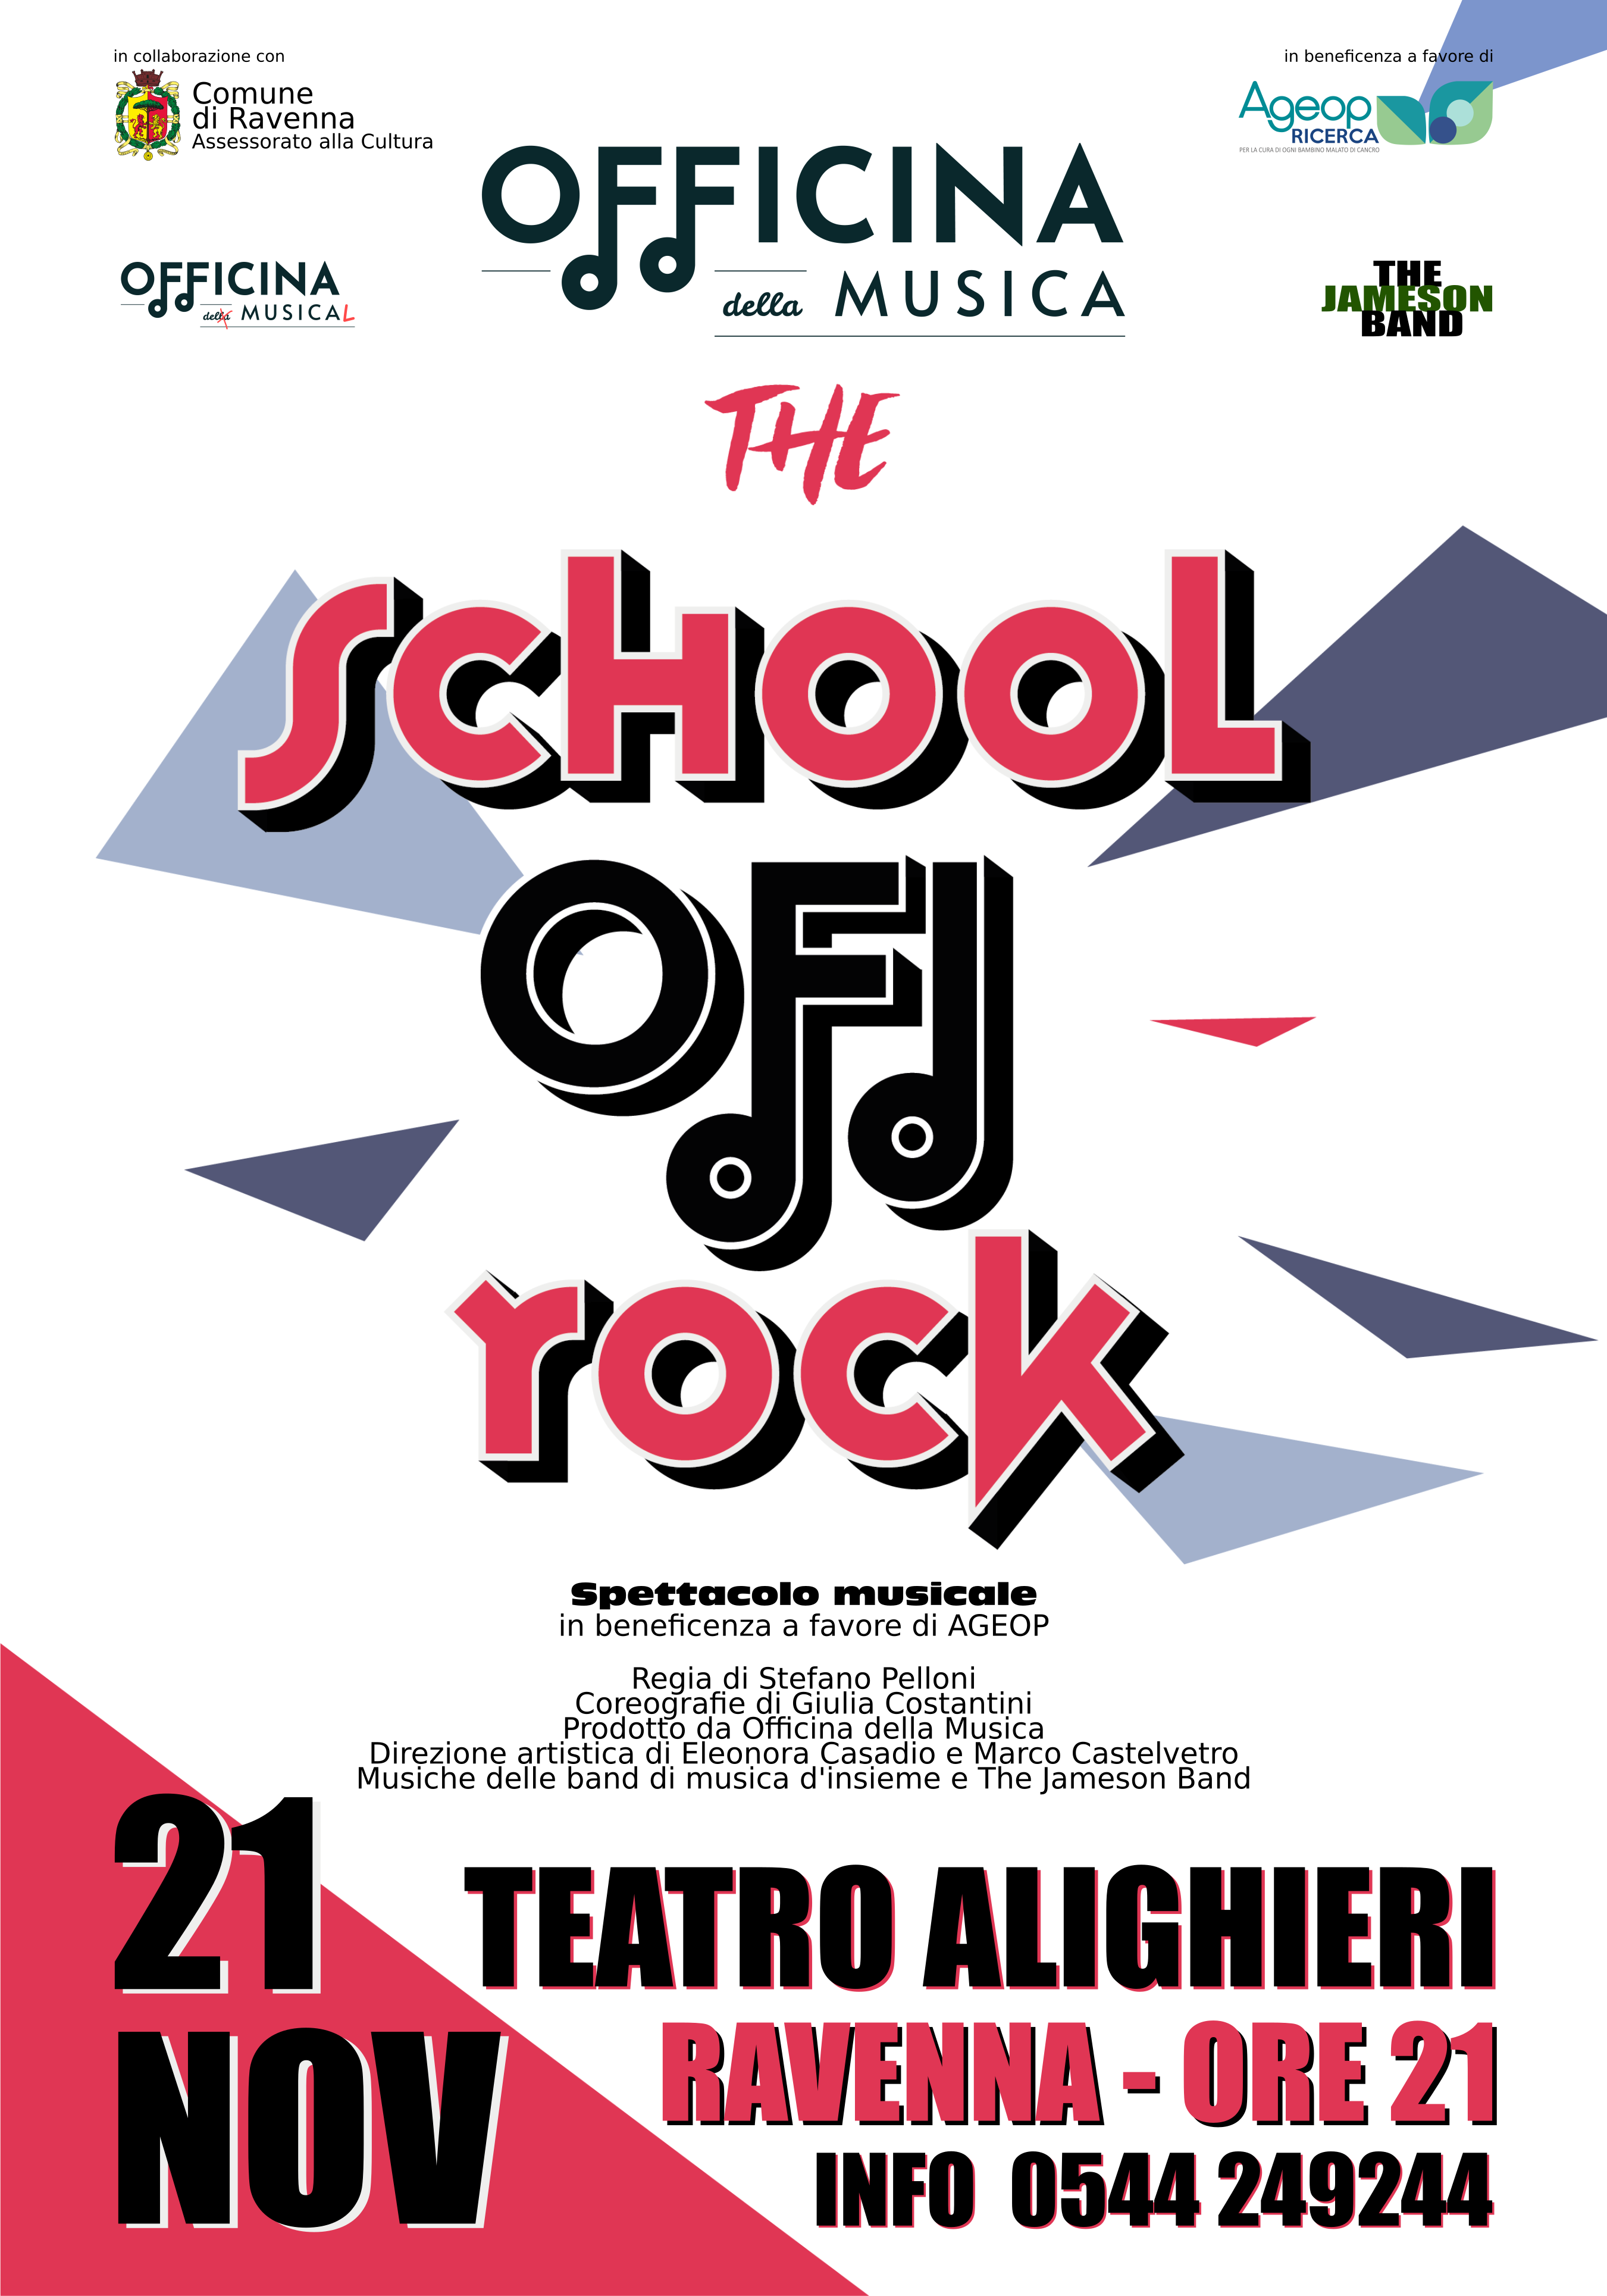 Il rock di Officina della Musica al Teatro Alighieri!